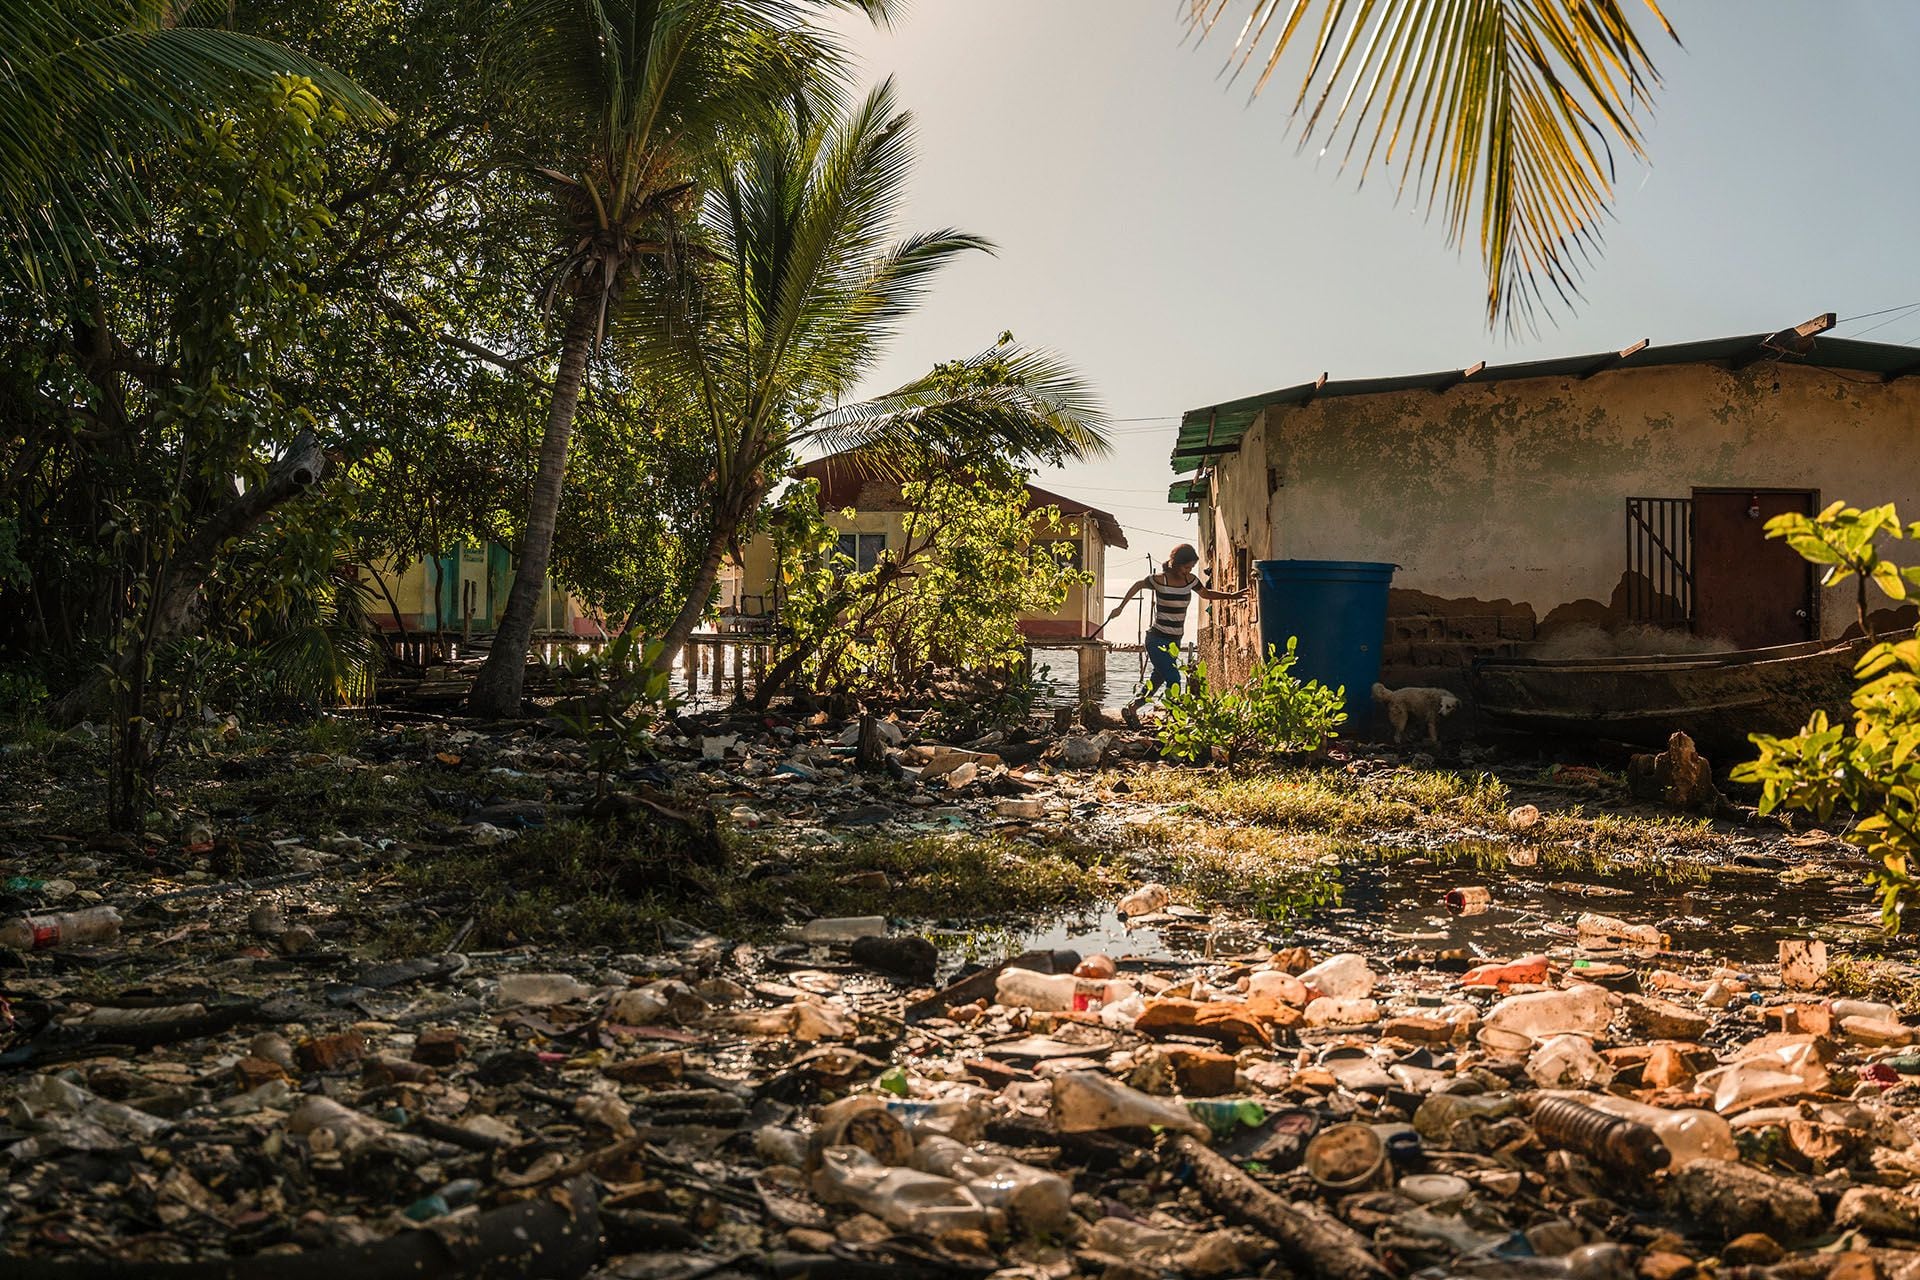 Maicleluz Baez, de 27 años, camina por una zona cercana al lago de Maracaibo contaminada con desechos plásticos (NYT)